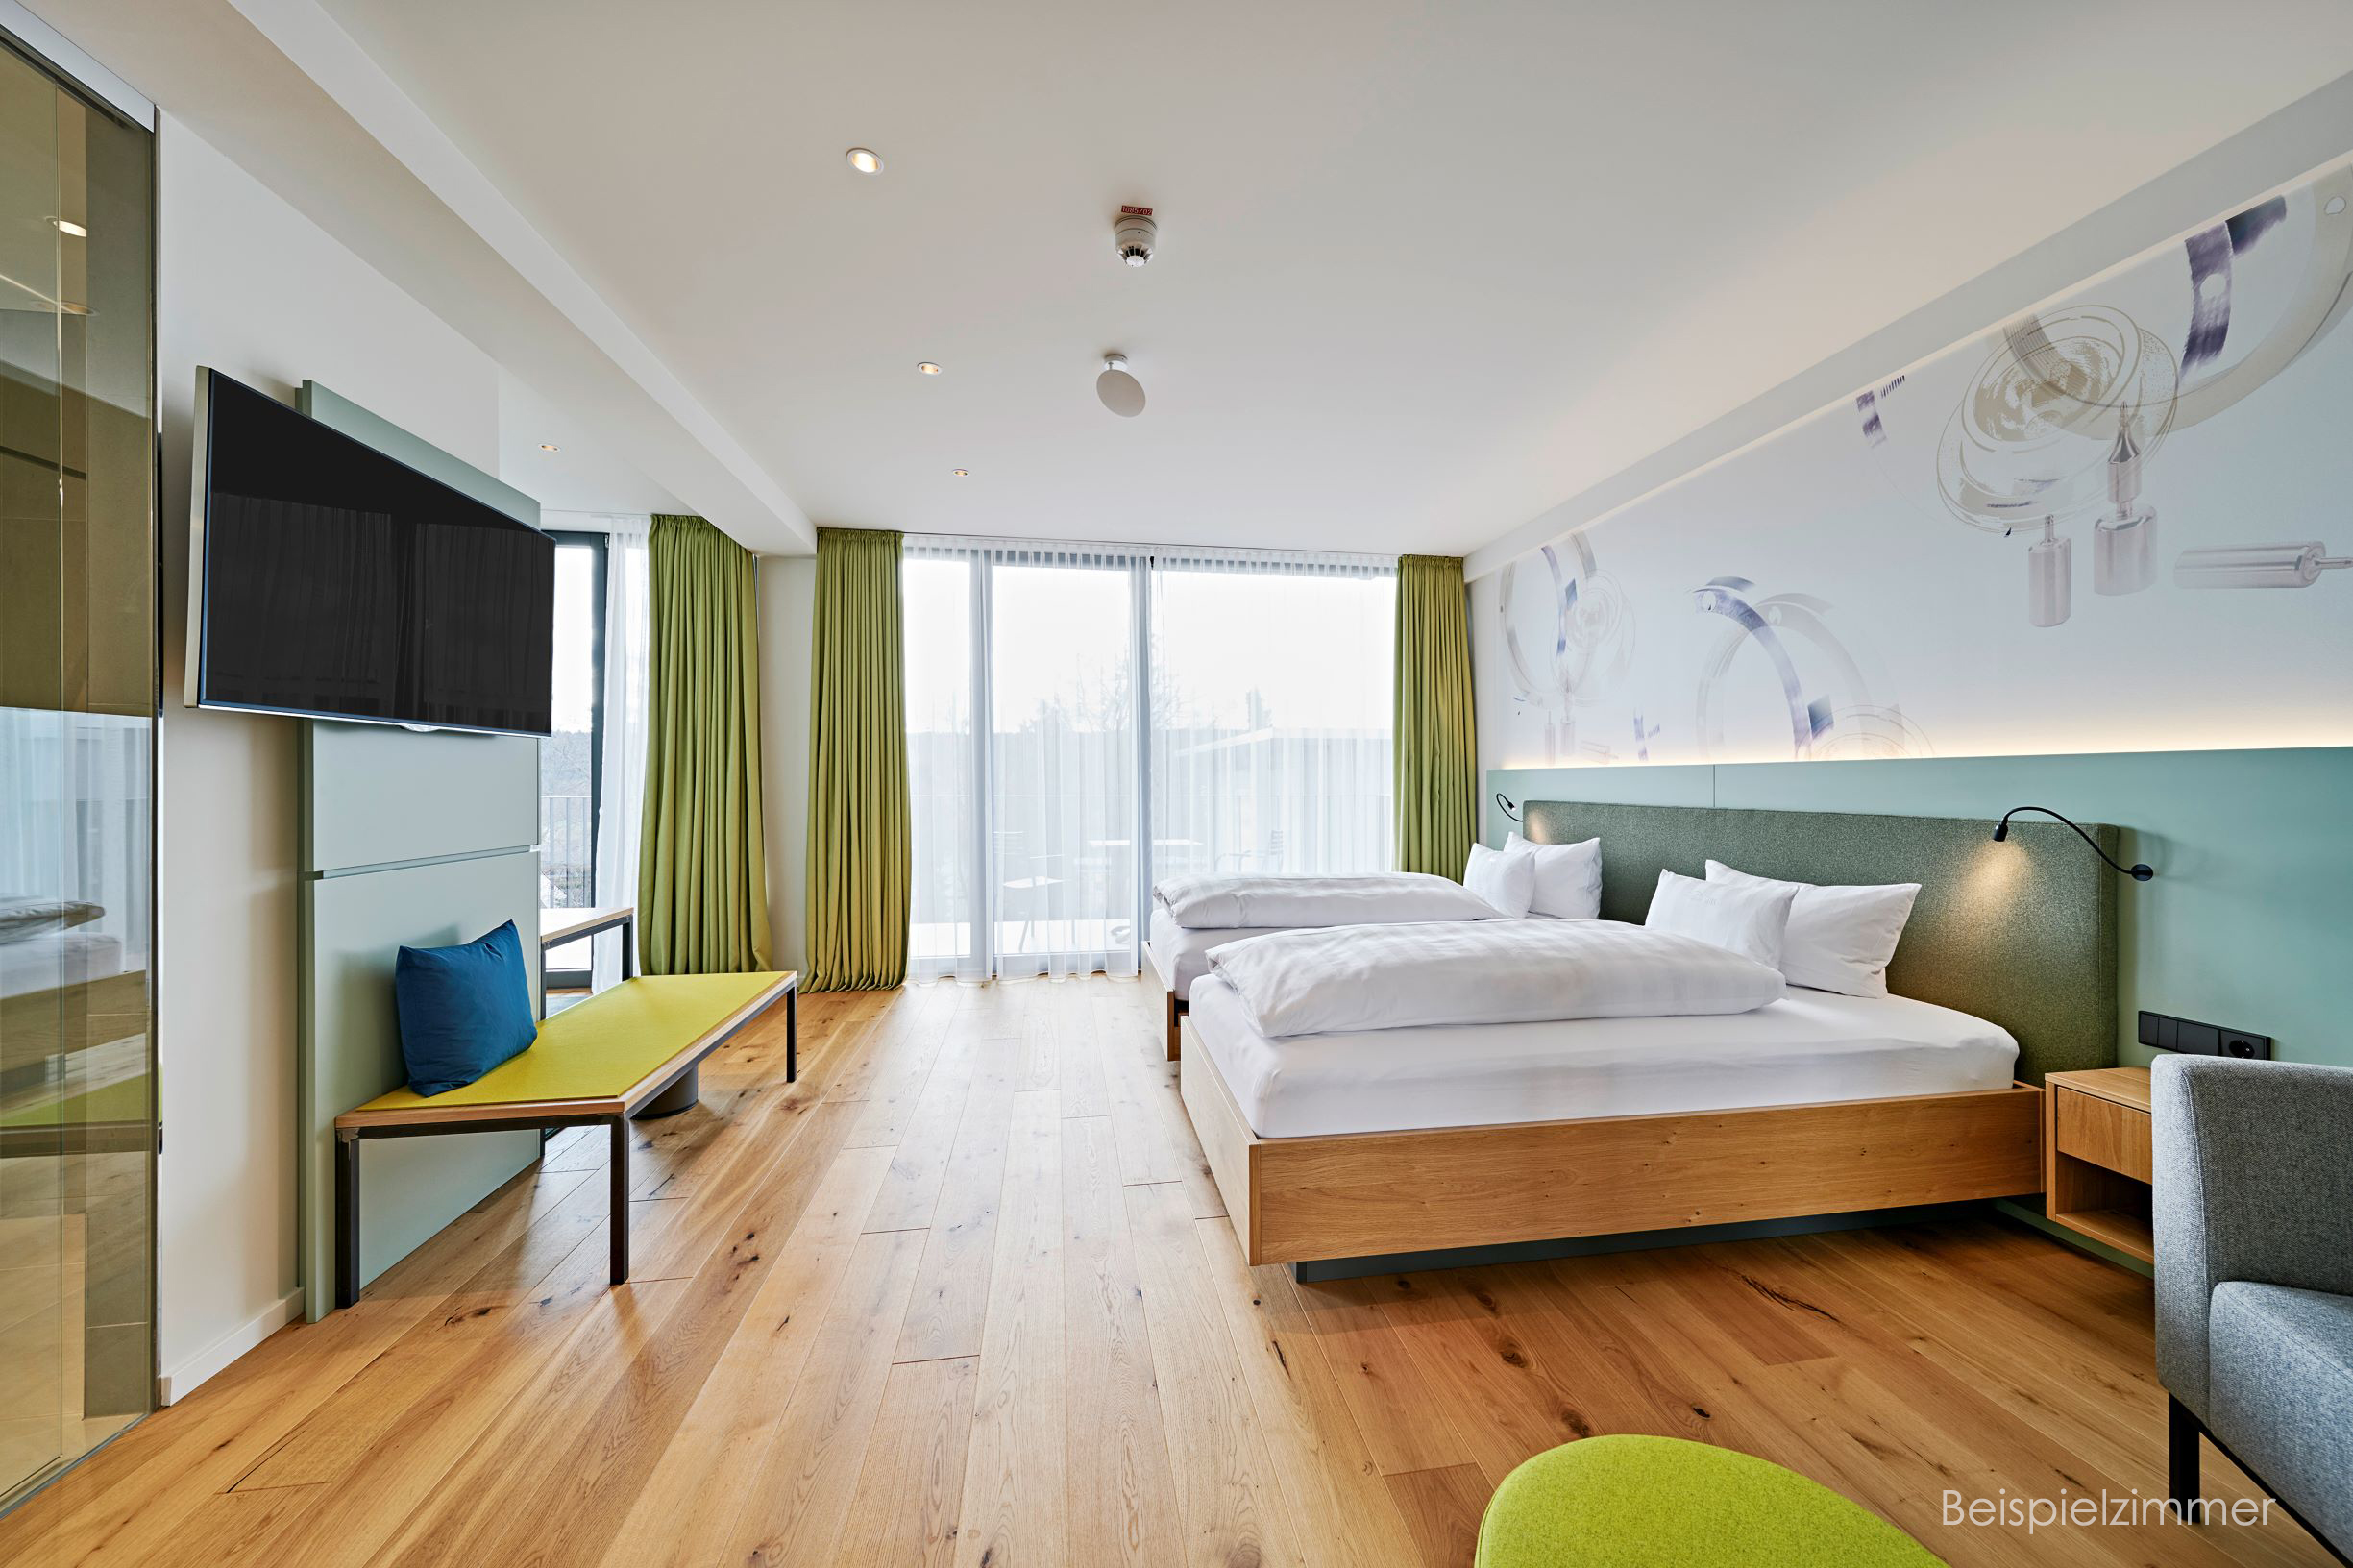 Beispielbild eines Doppelzimmers mit zwei Betten in der Kategorie Vertrieb im Weitwinkelformat fotografiert